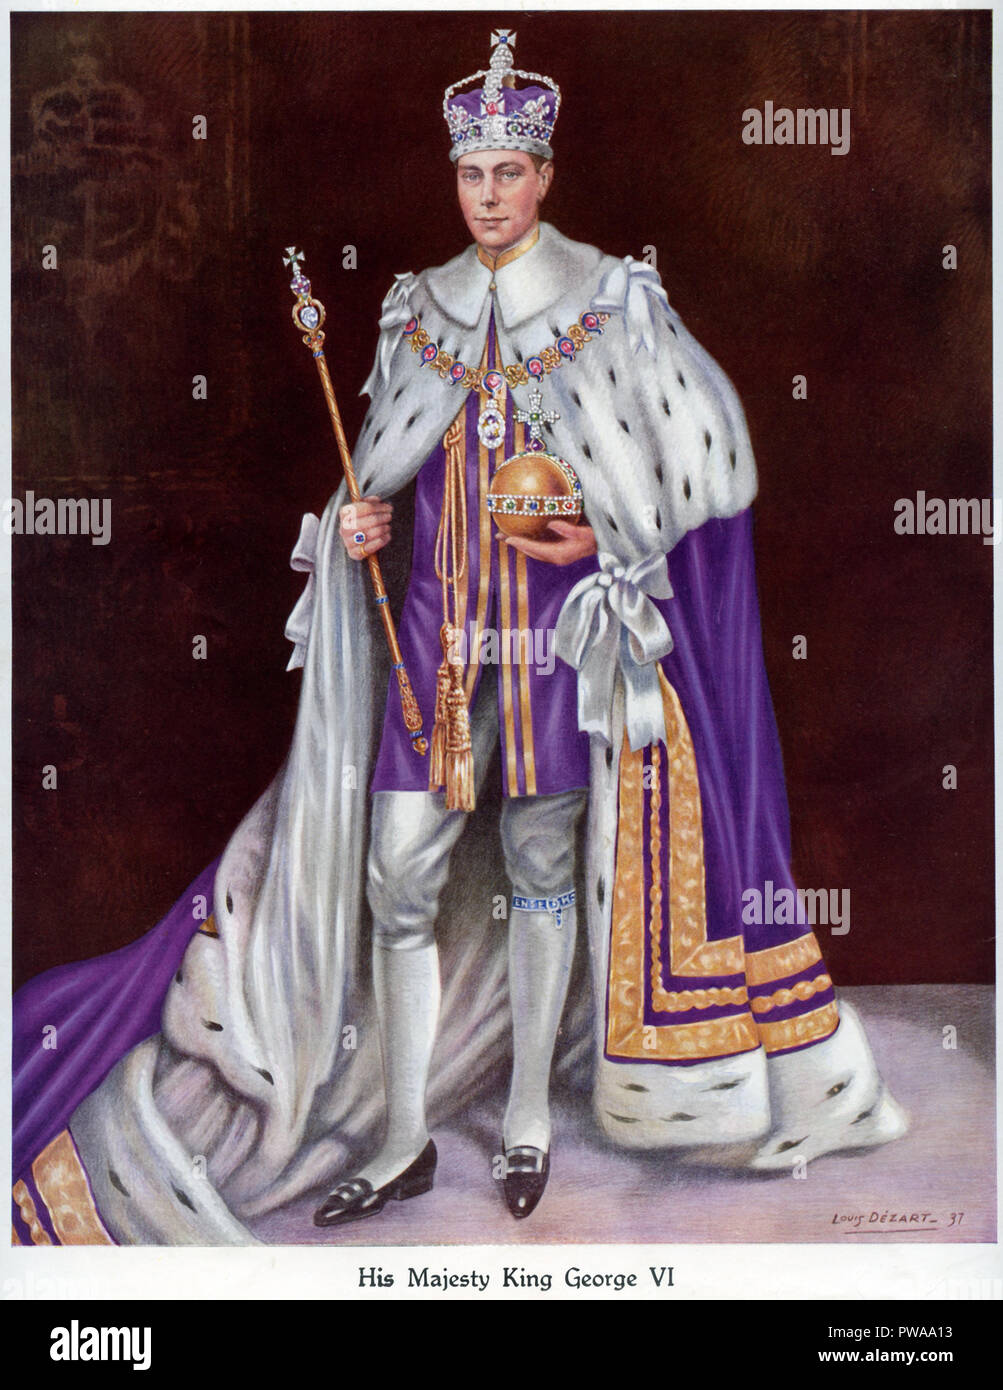 Un retrato de la coronación del rey Jorge la sexta el 12 de mayo de 1937 mostrando el Rey vistiendo su abrigo de coronación de la corona y llevar el orbe y el cetro publicado en un libro de recuerdos de coronación publicado por el Daily Express de fecha 1937 y pintado por Louis Dezart Foto de stock